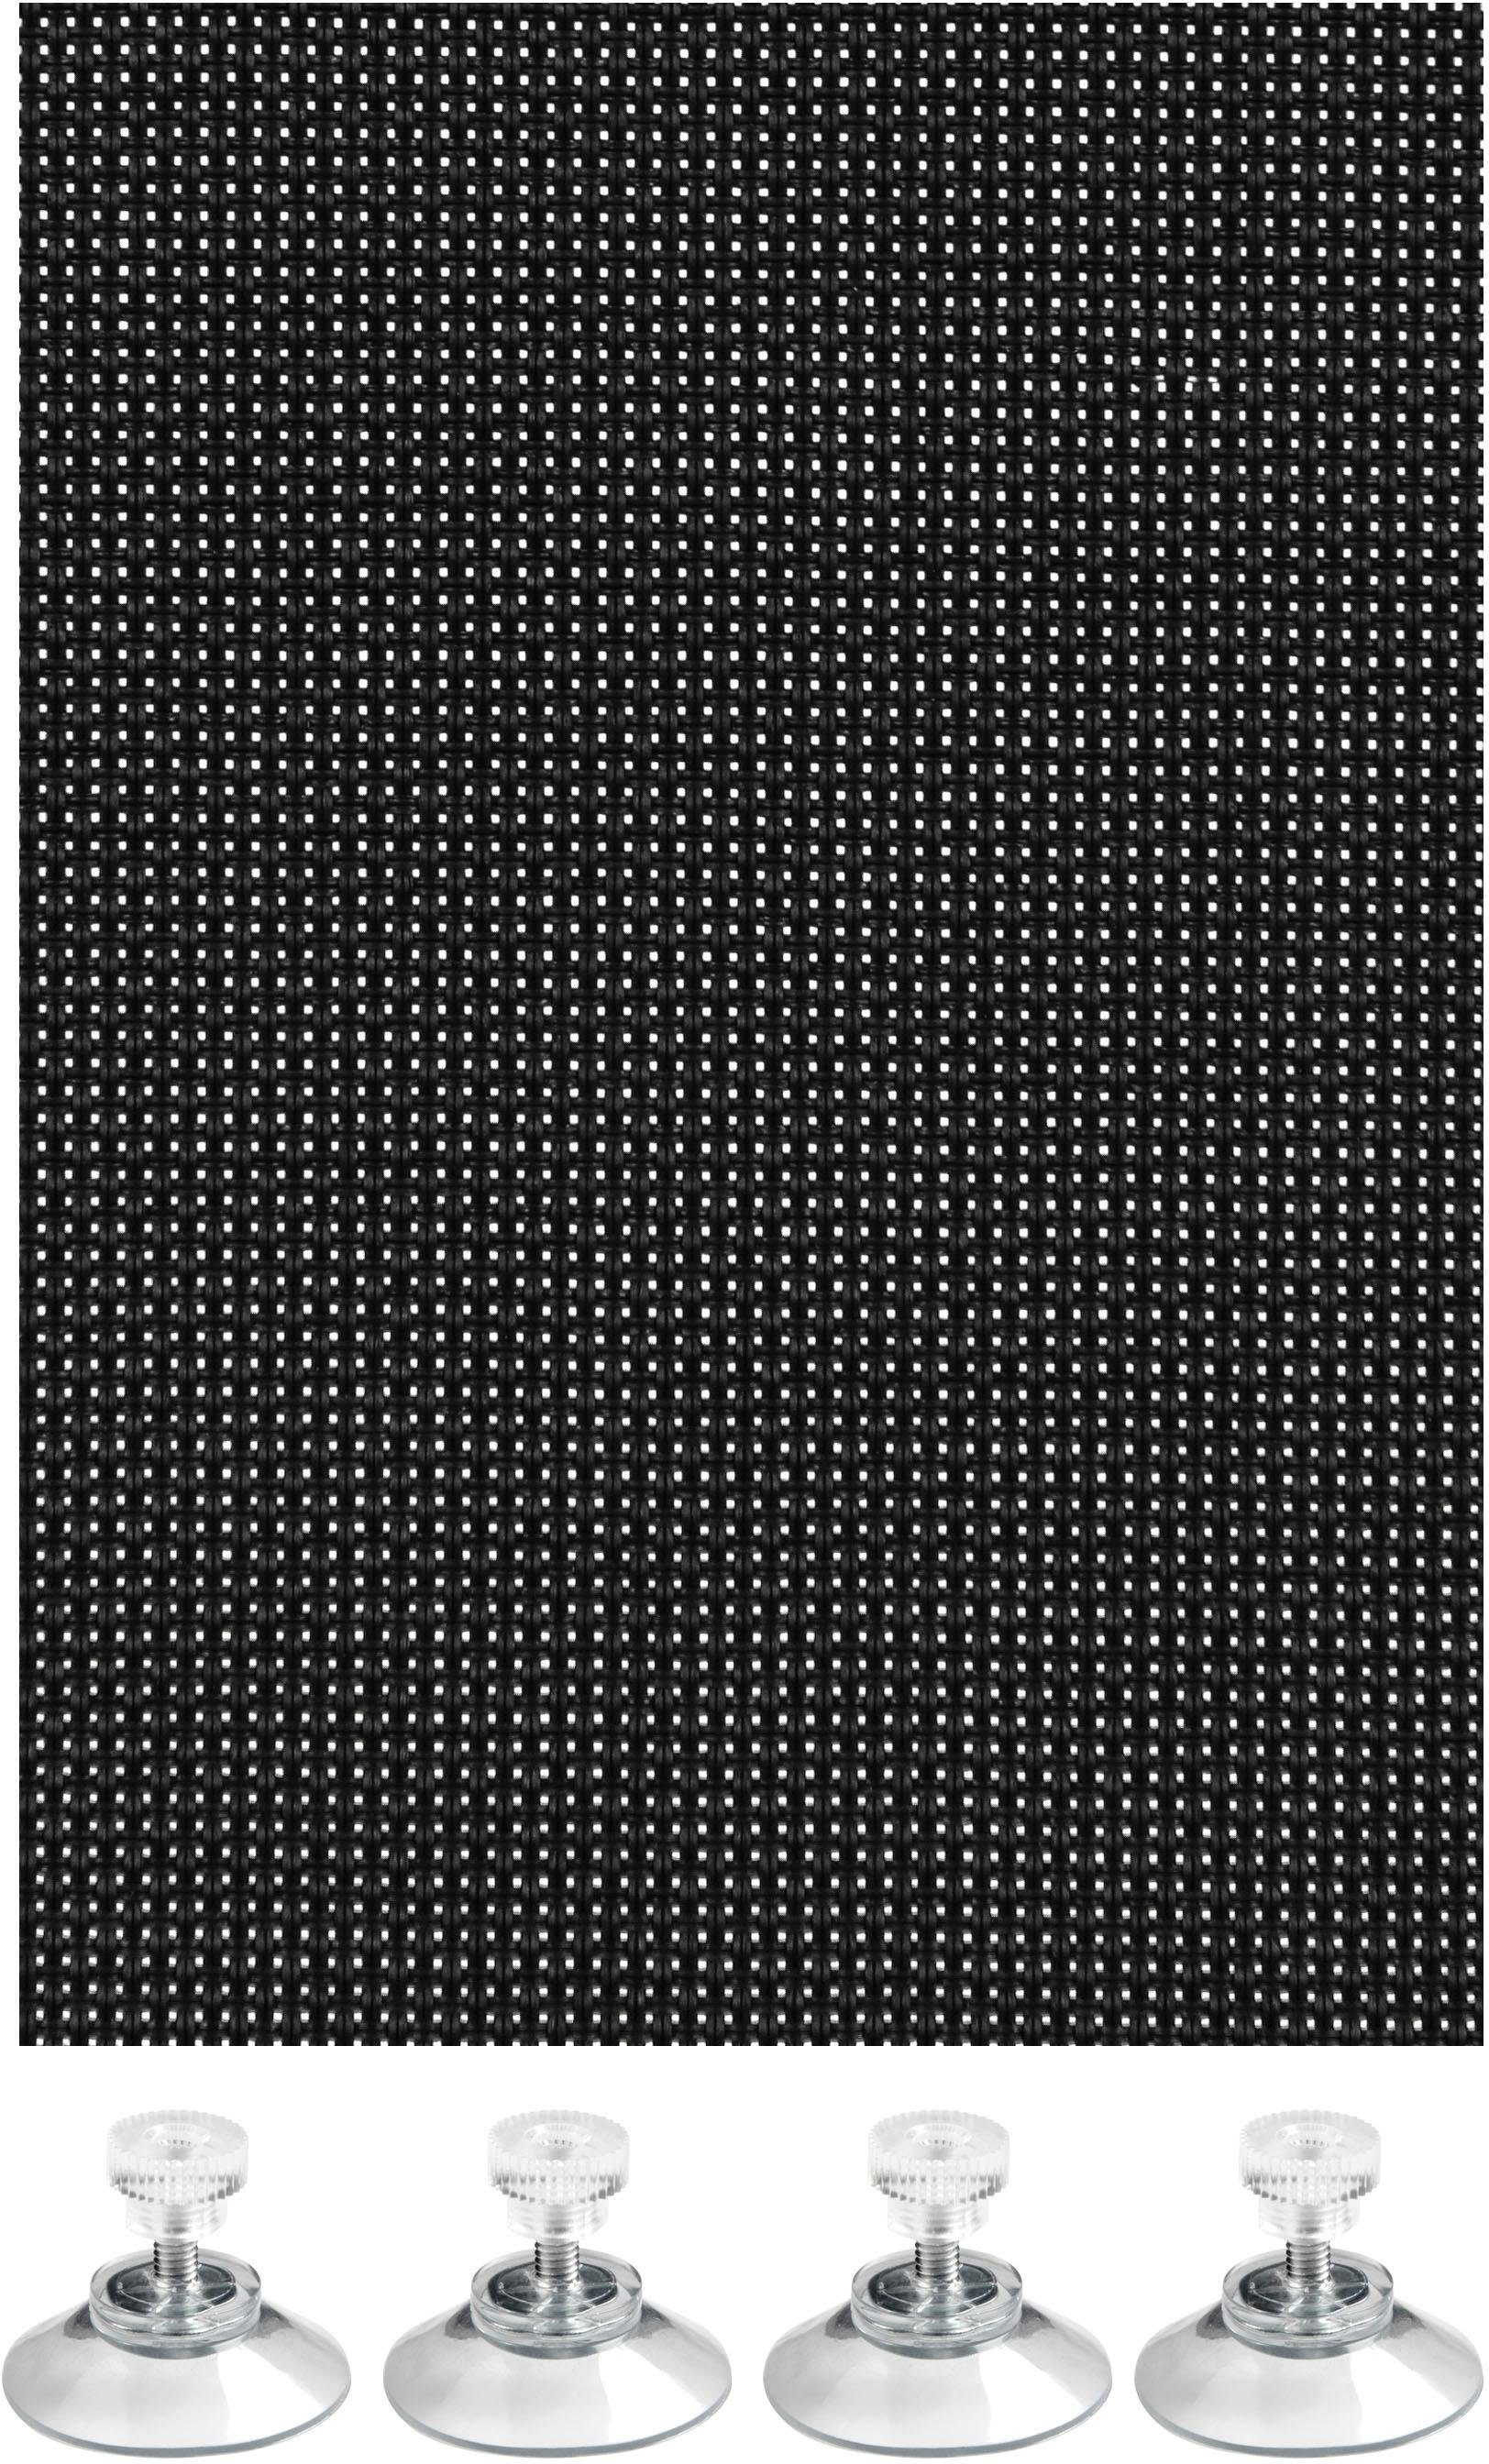 Tönungsfolie 75cm x 300cm 15% Lichtdurchlässig schwarz